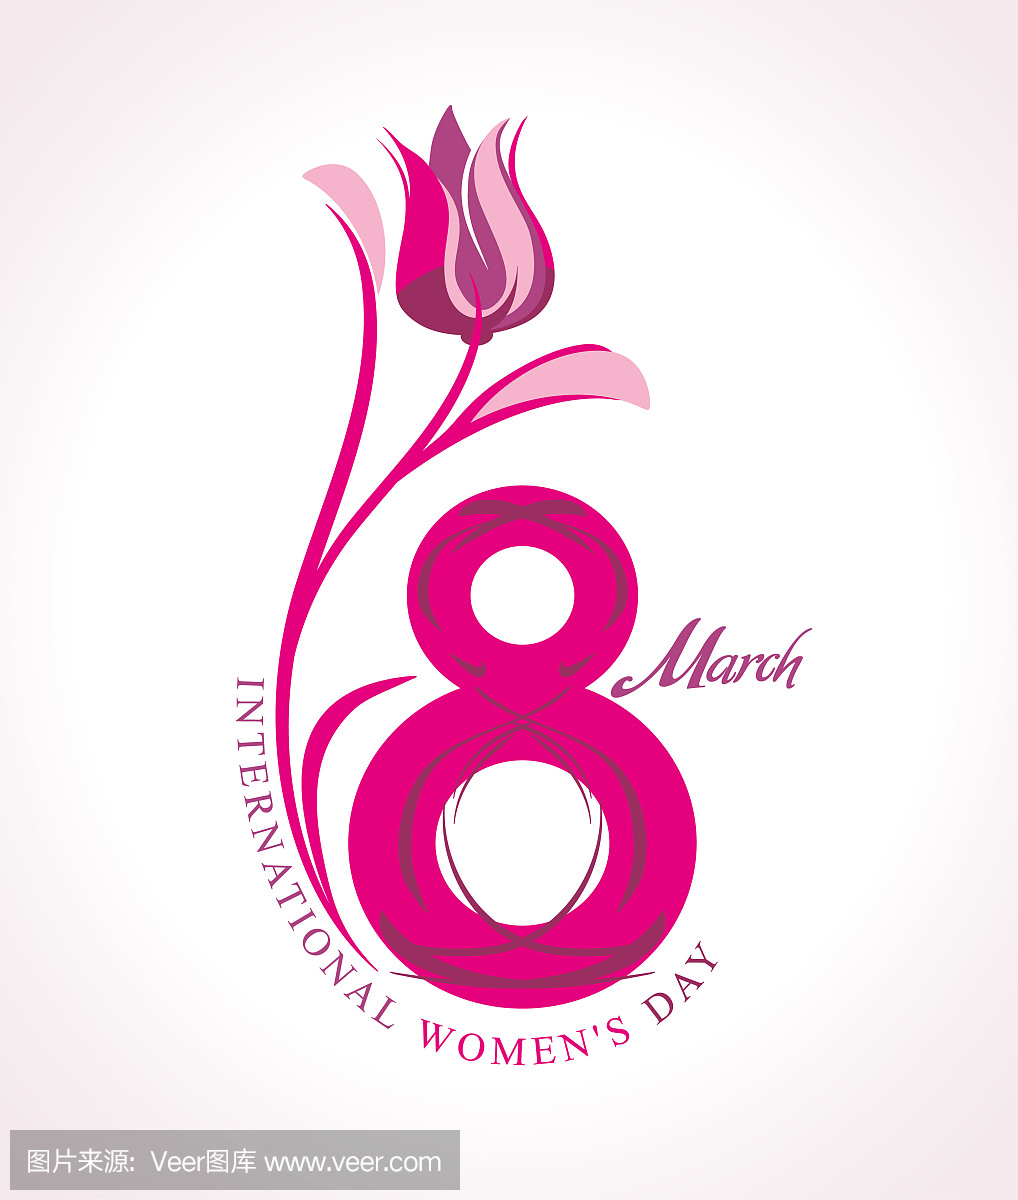 3月8日。国际妇女节。